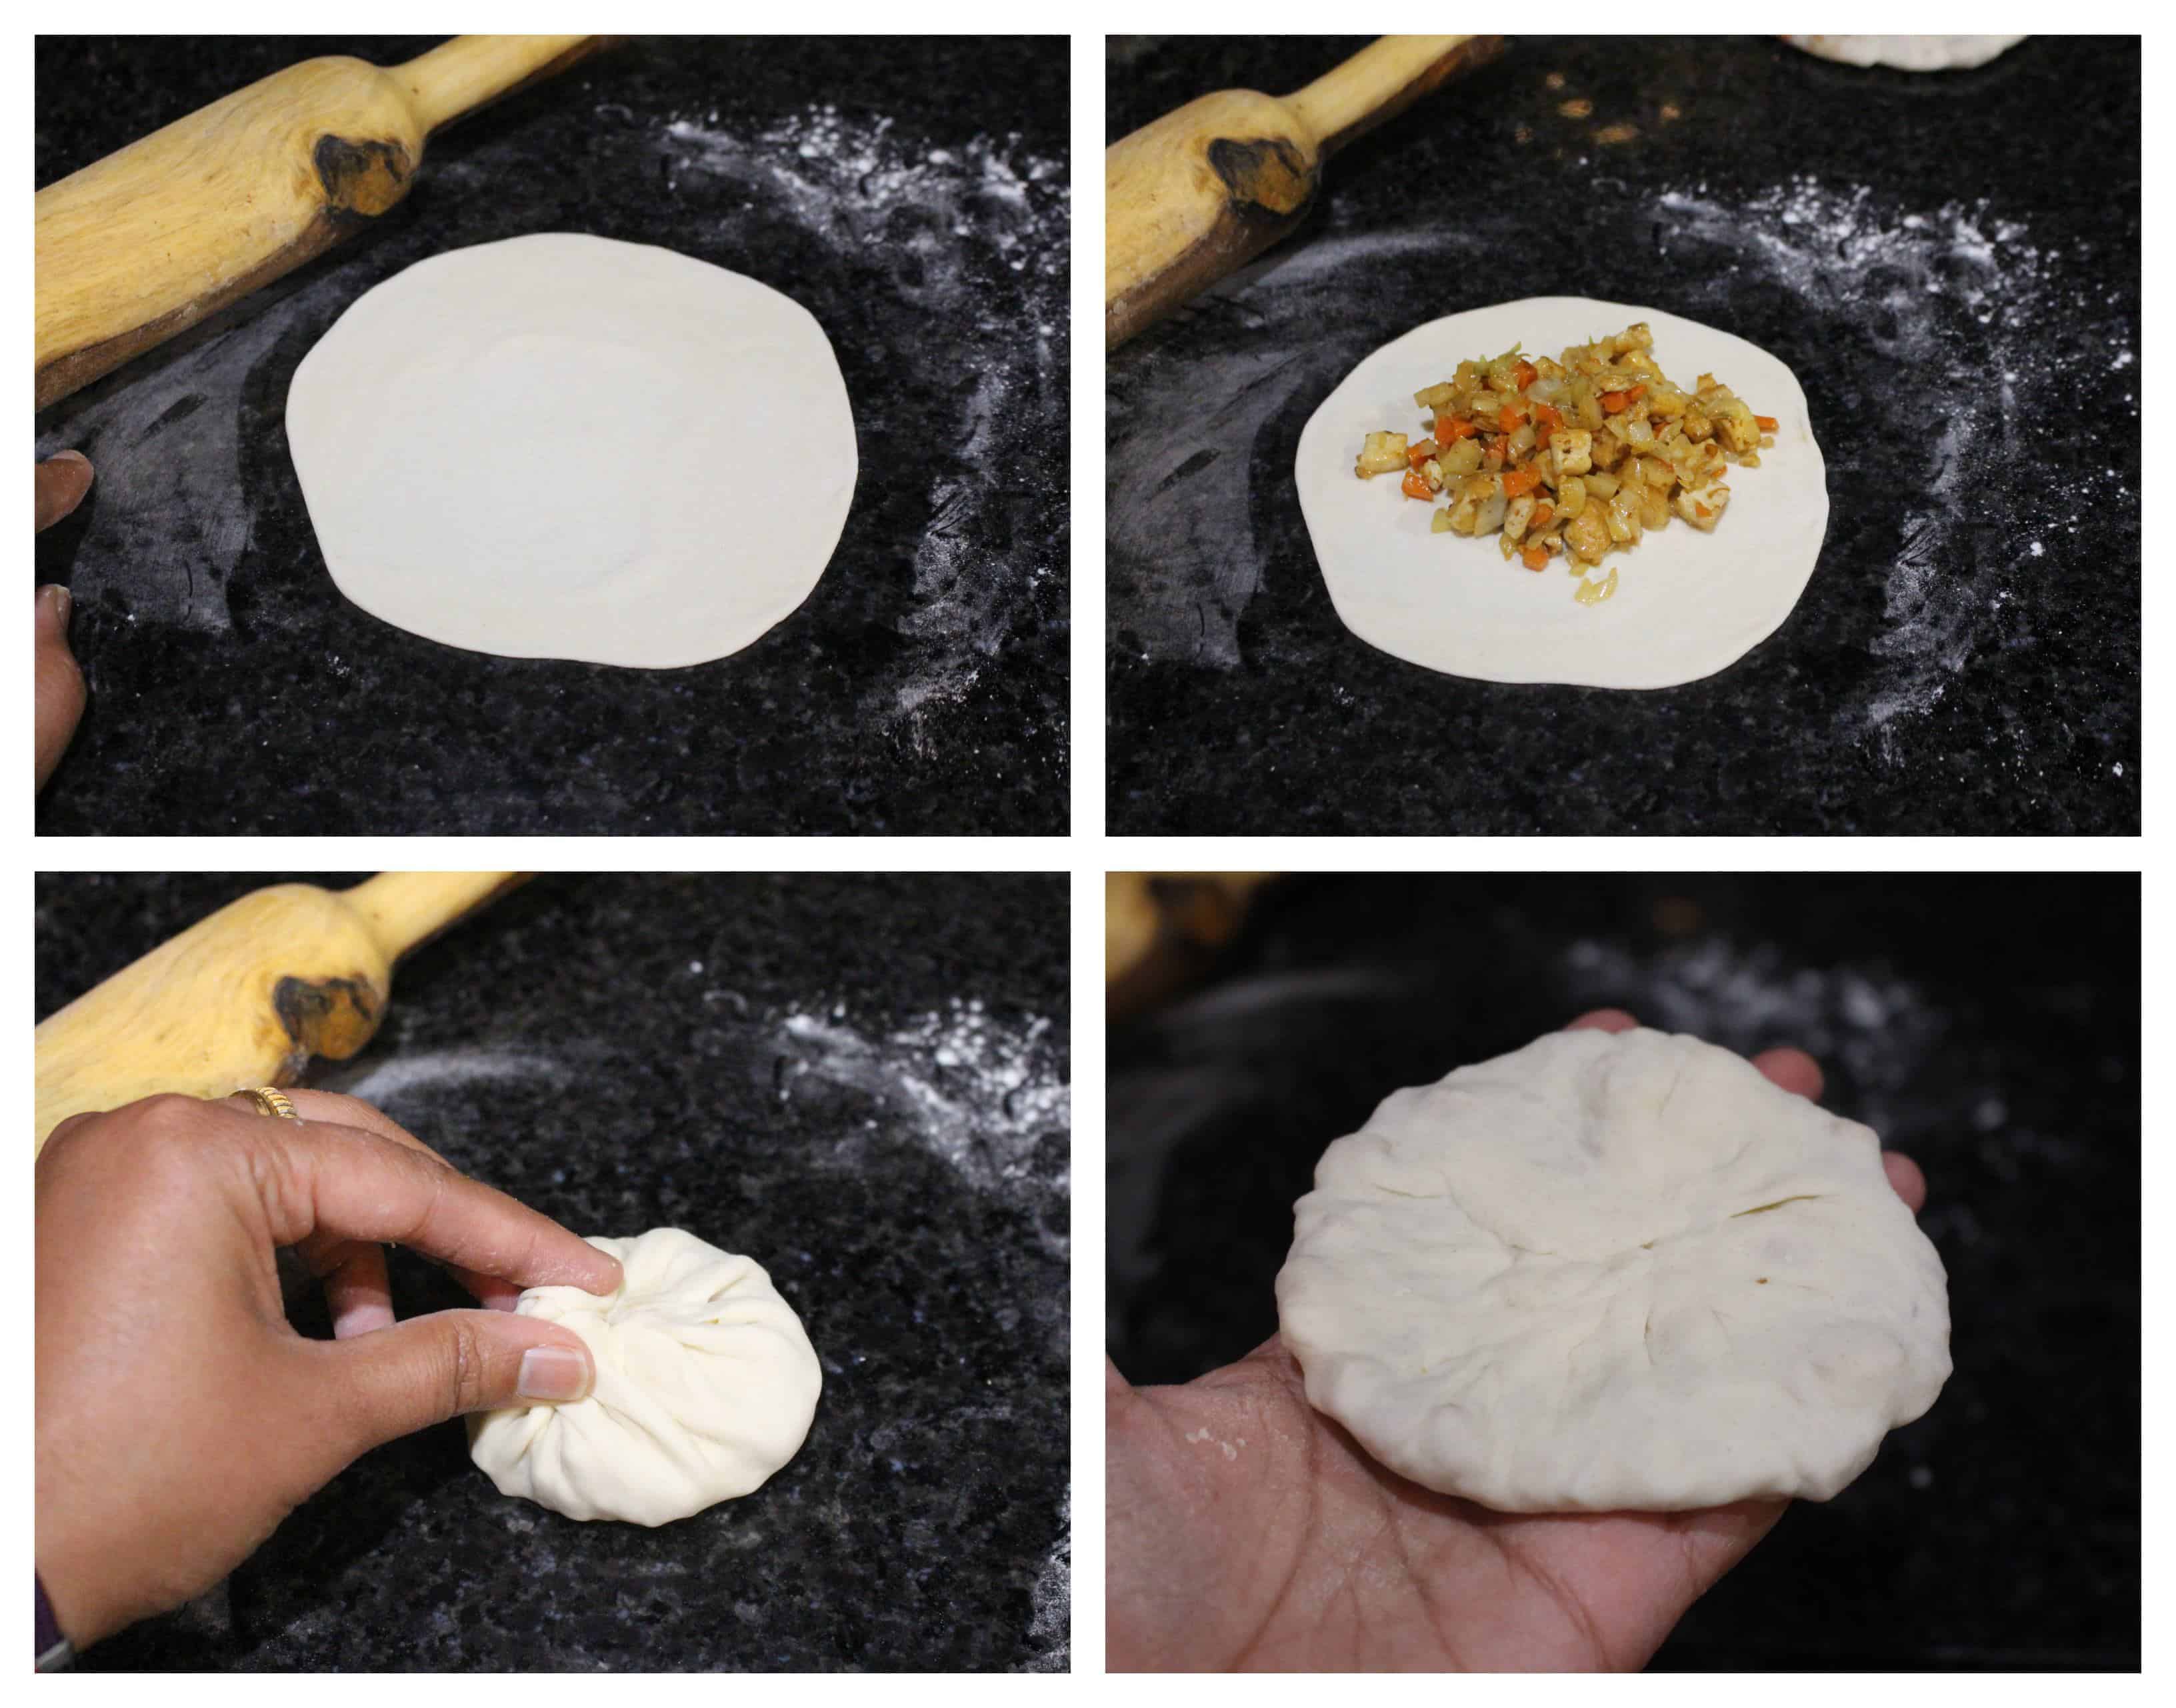 Shaping the pancake 